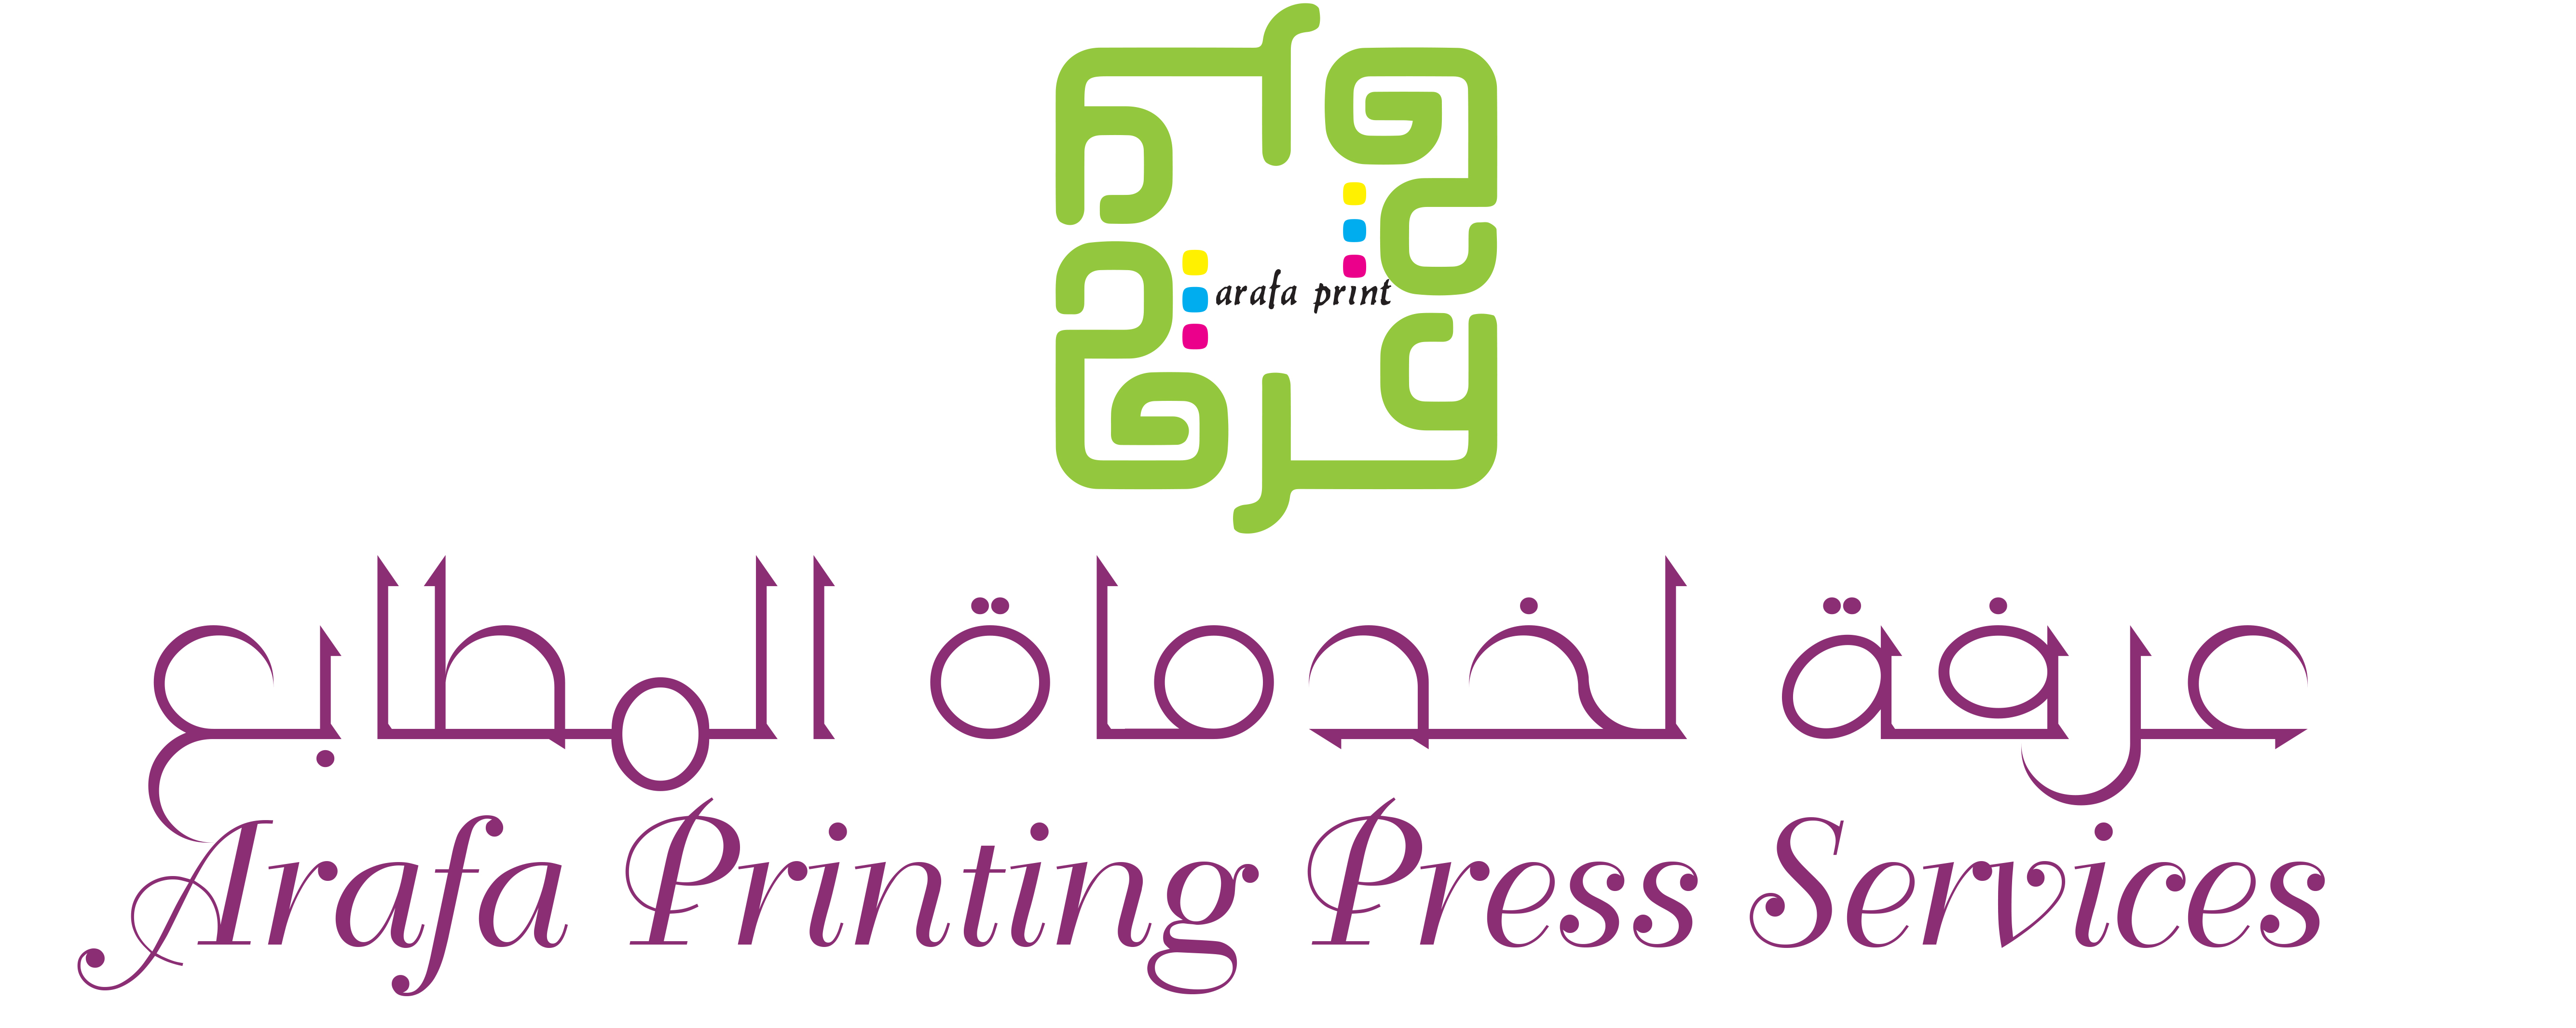 Digital Printing in Duabi